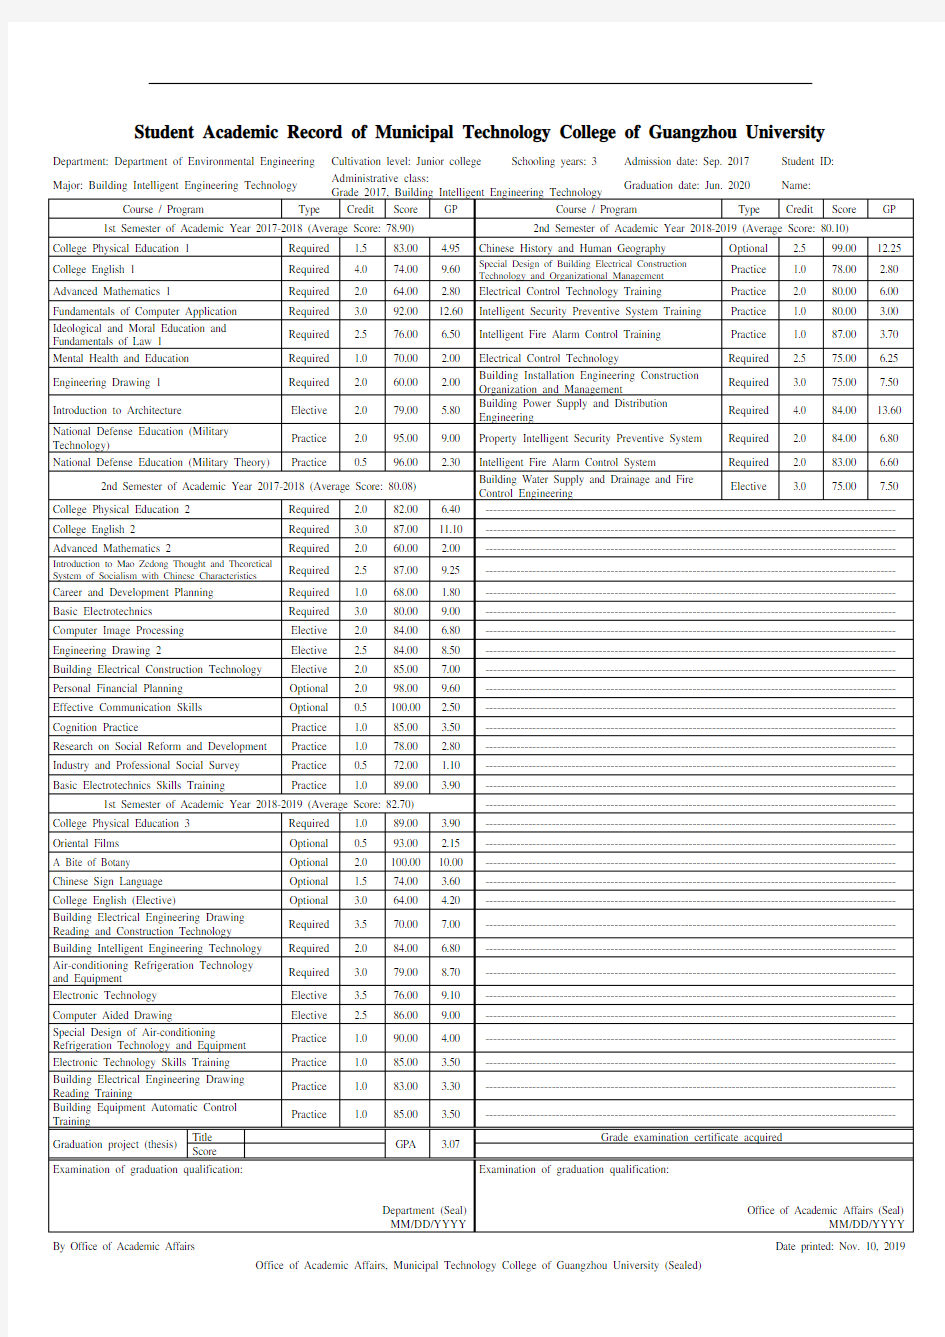 成绩单-广州大学市政技术学院-环境工程系-竖版10列-毕业资格审查